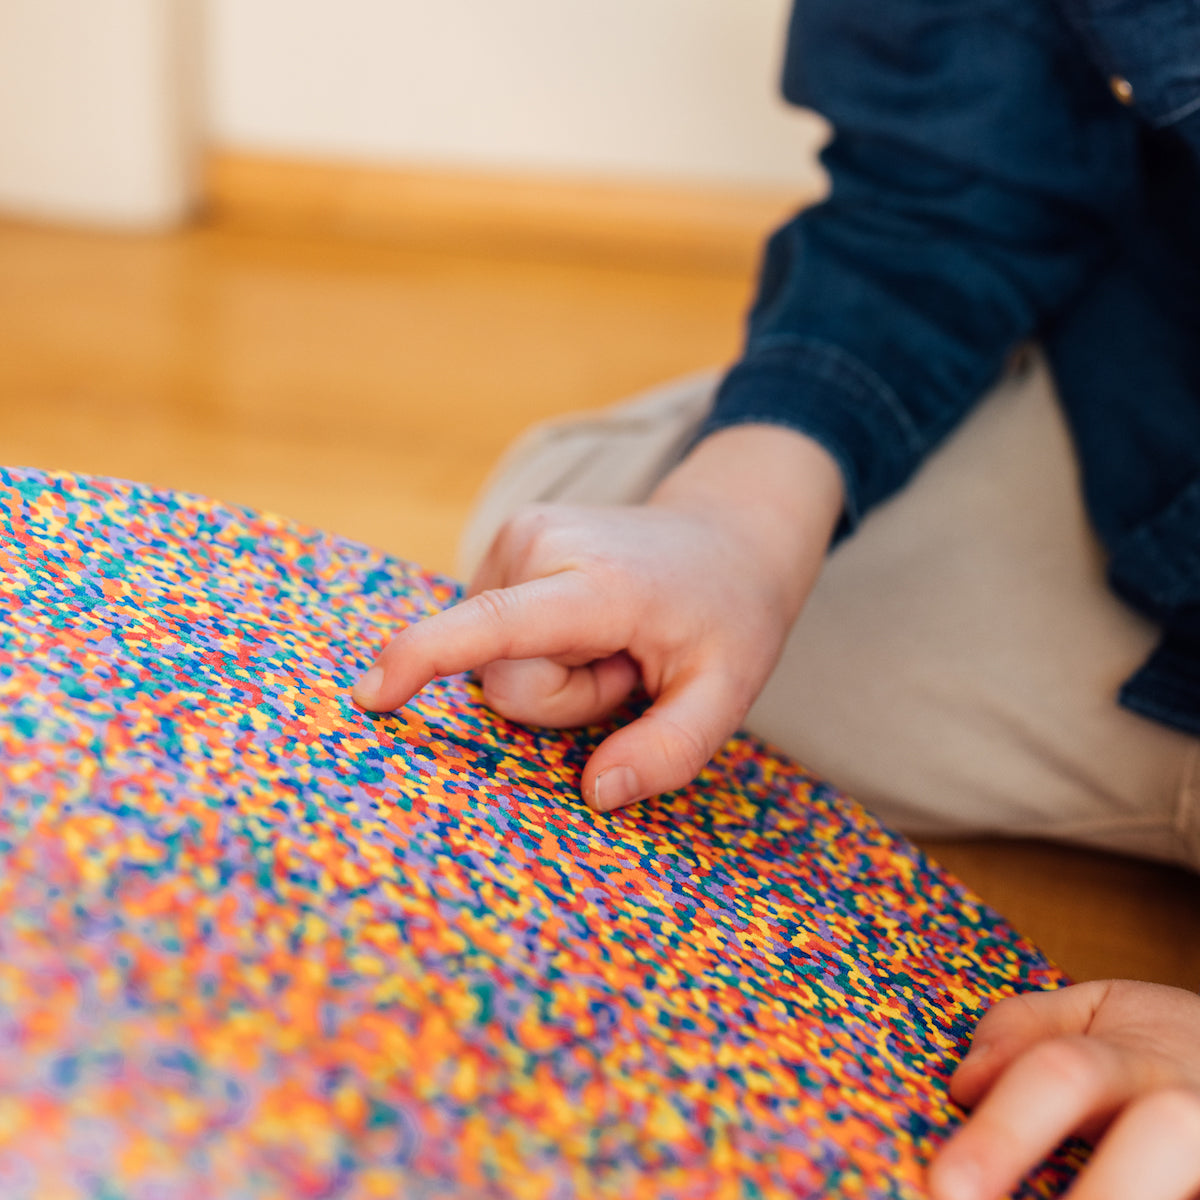 Stapelstein board confetti classic is het perfecte speelgoed voor leuke balansoefeningen, om op te zitten of om te gebruiken in een parcours. Met dit open einde speelgoed zijn de mogelijkheden eindeloos. VanZus.